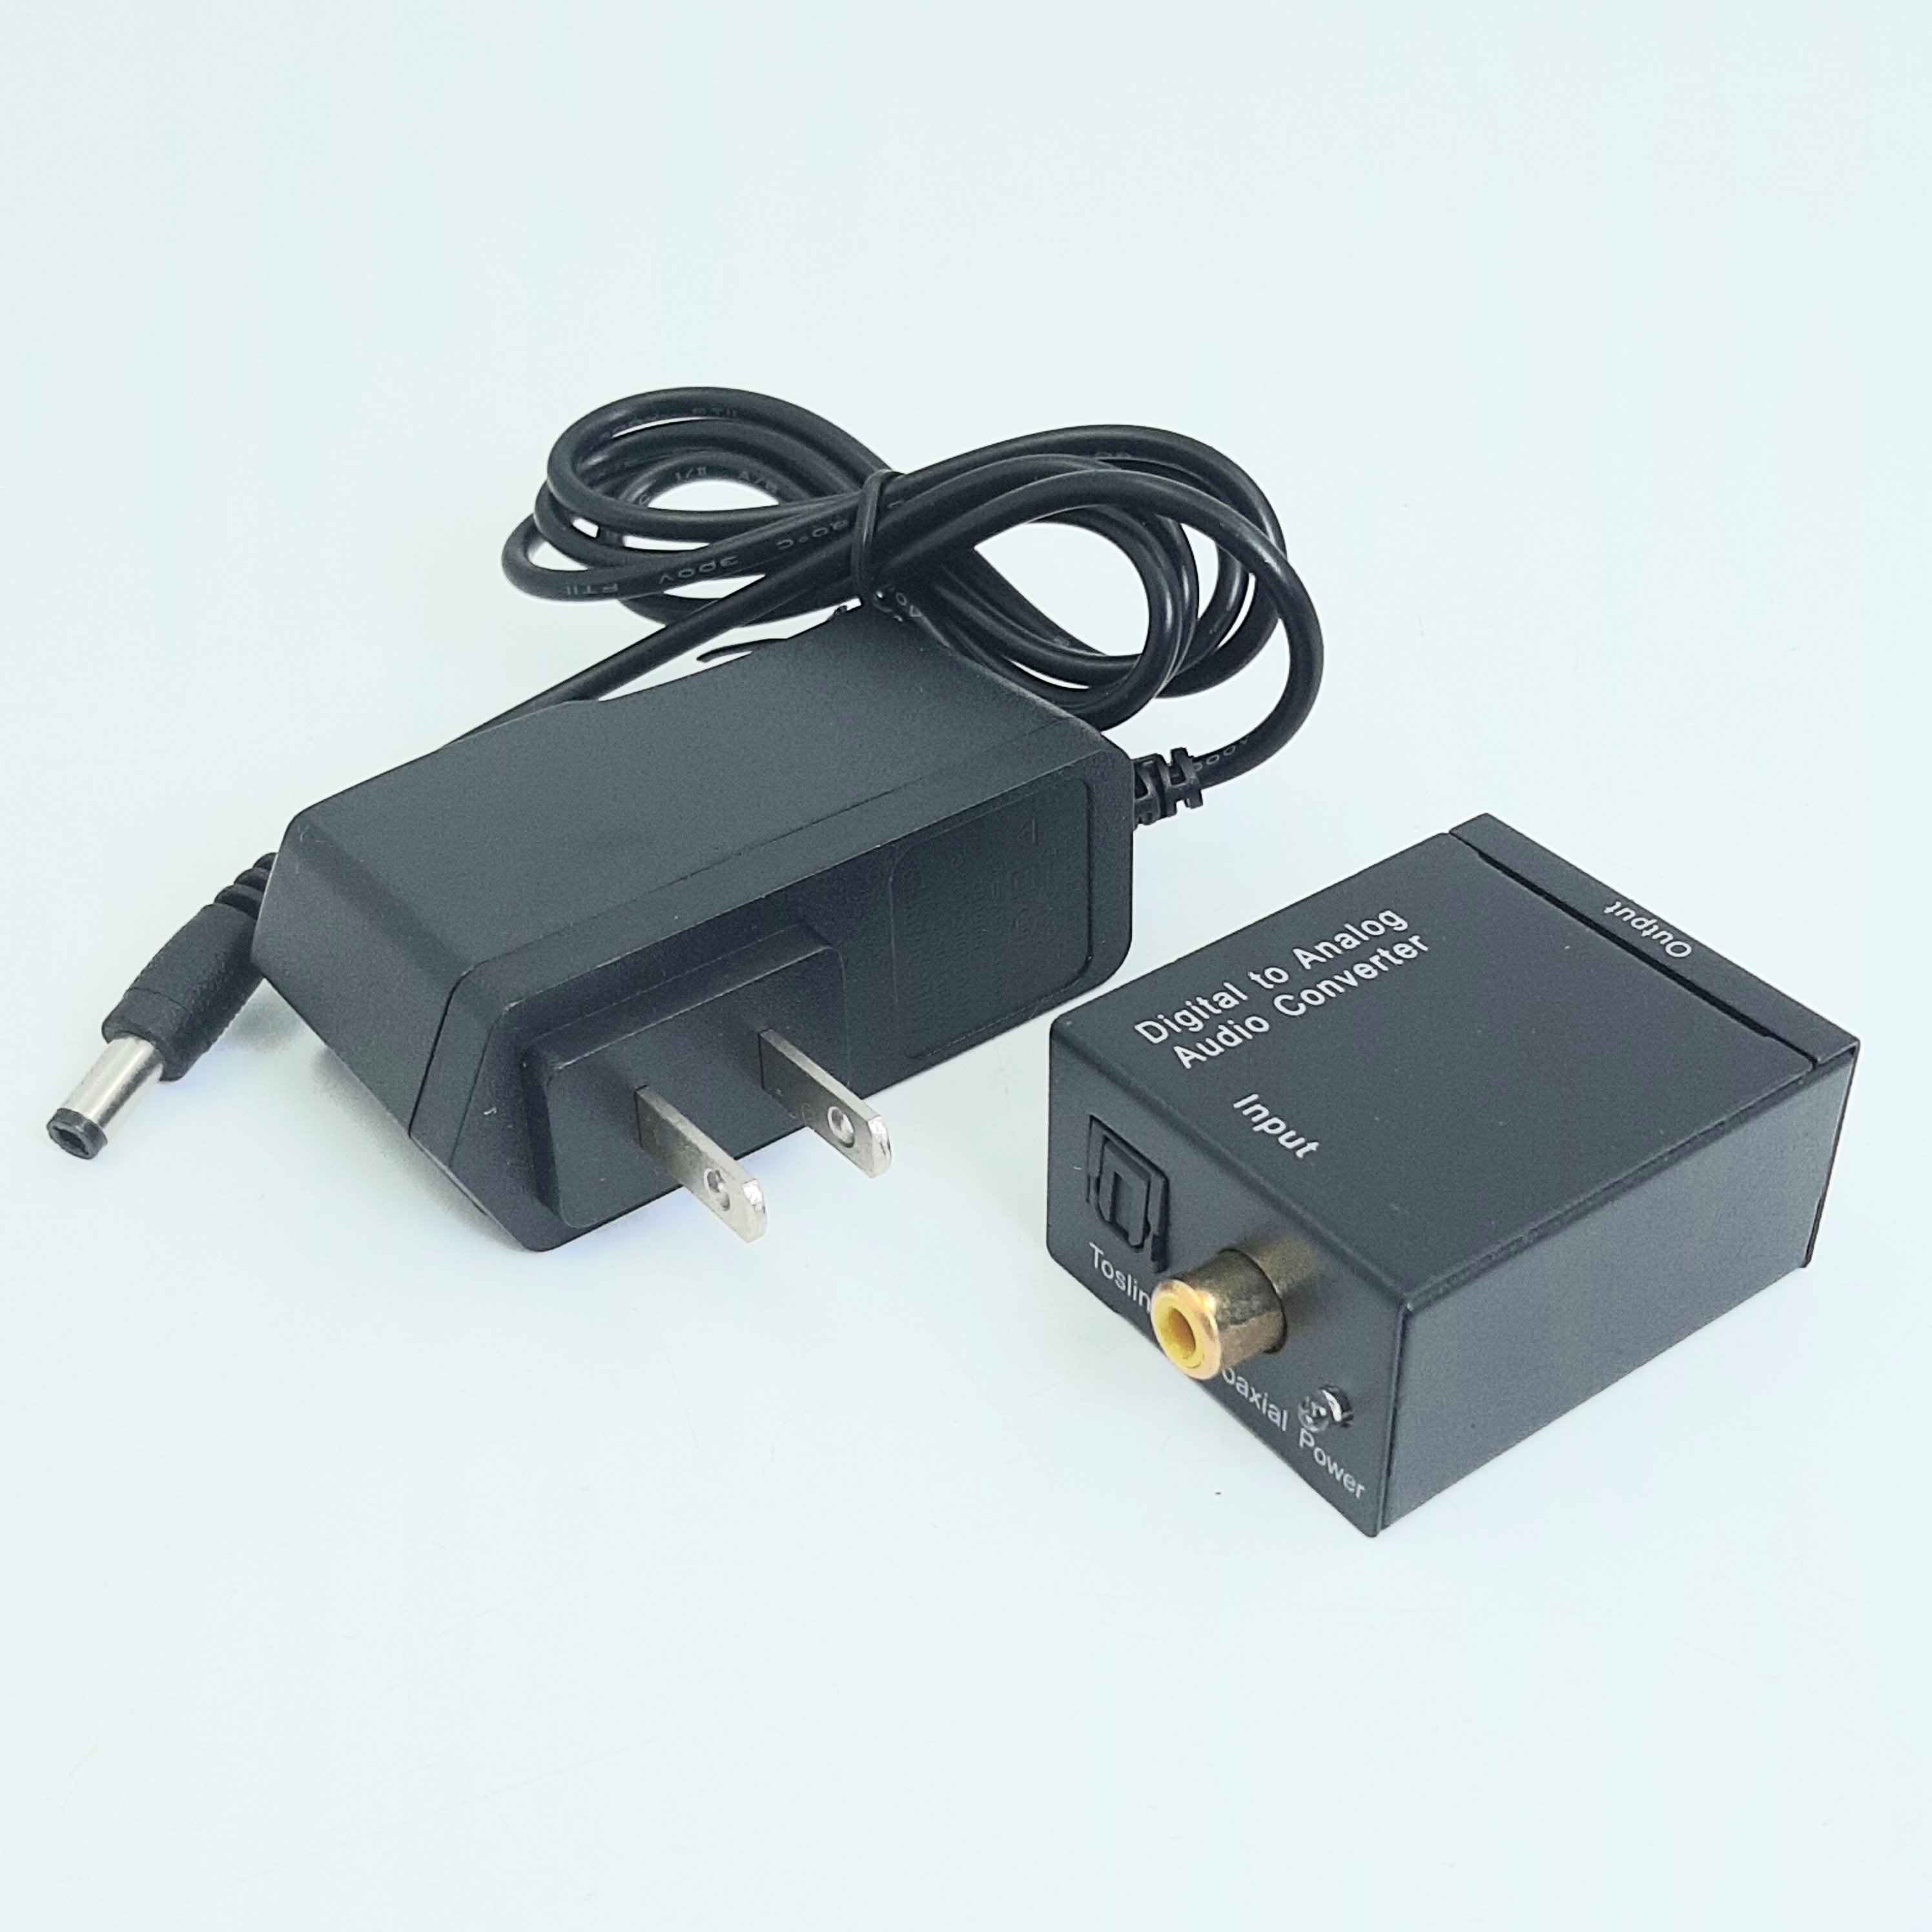 Óptico a coaxial, convertidor de audio digital coaxial a óptico, adaptador  divisor de convertidor de audio digital bidireccional, Plug and Play